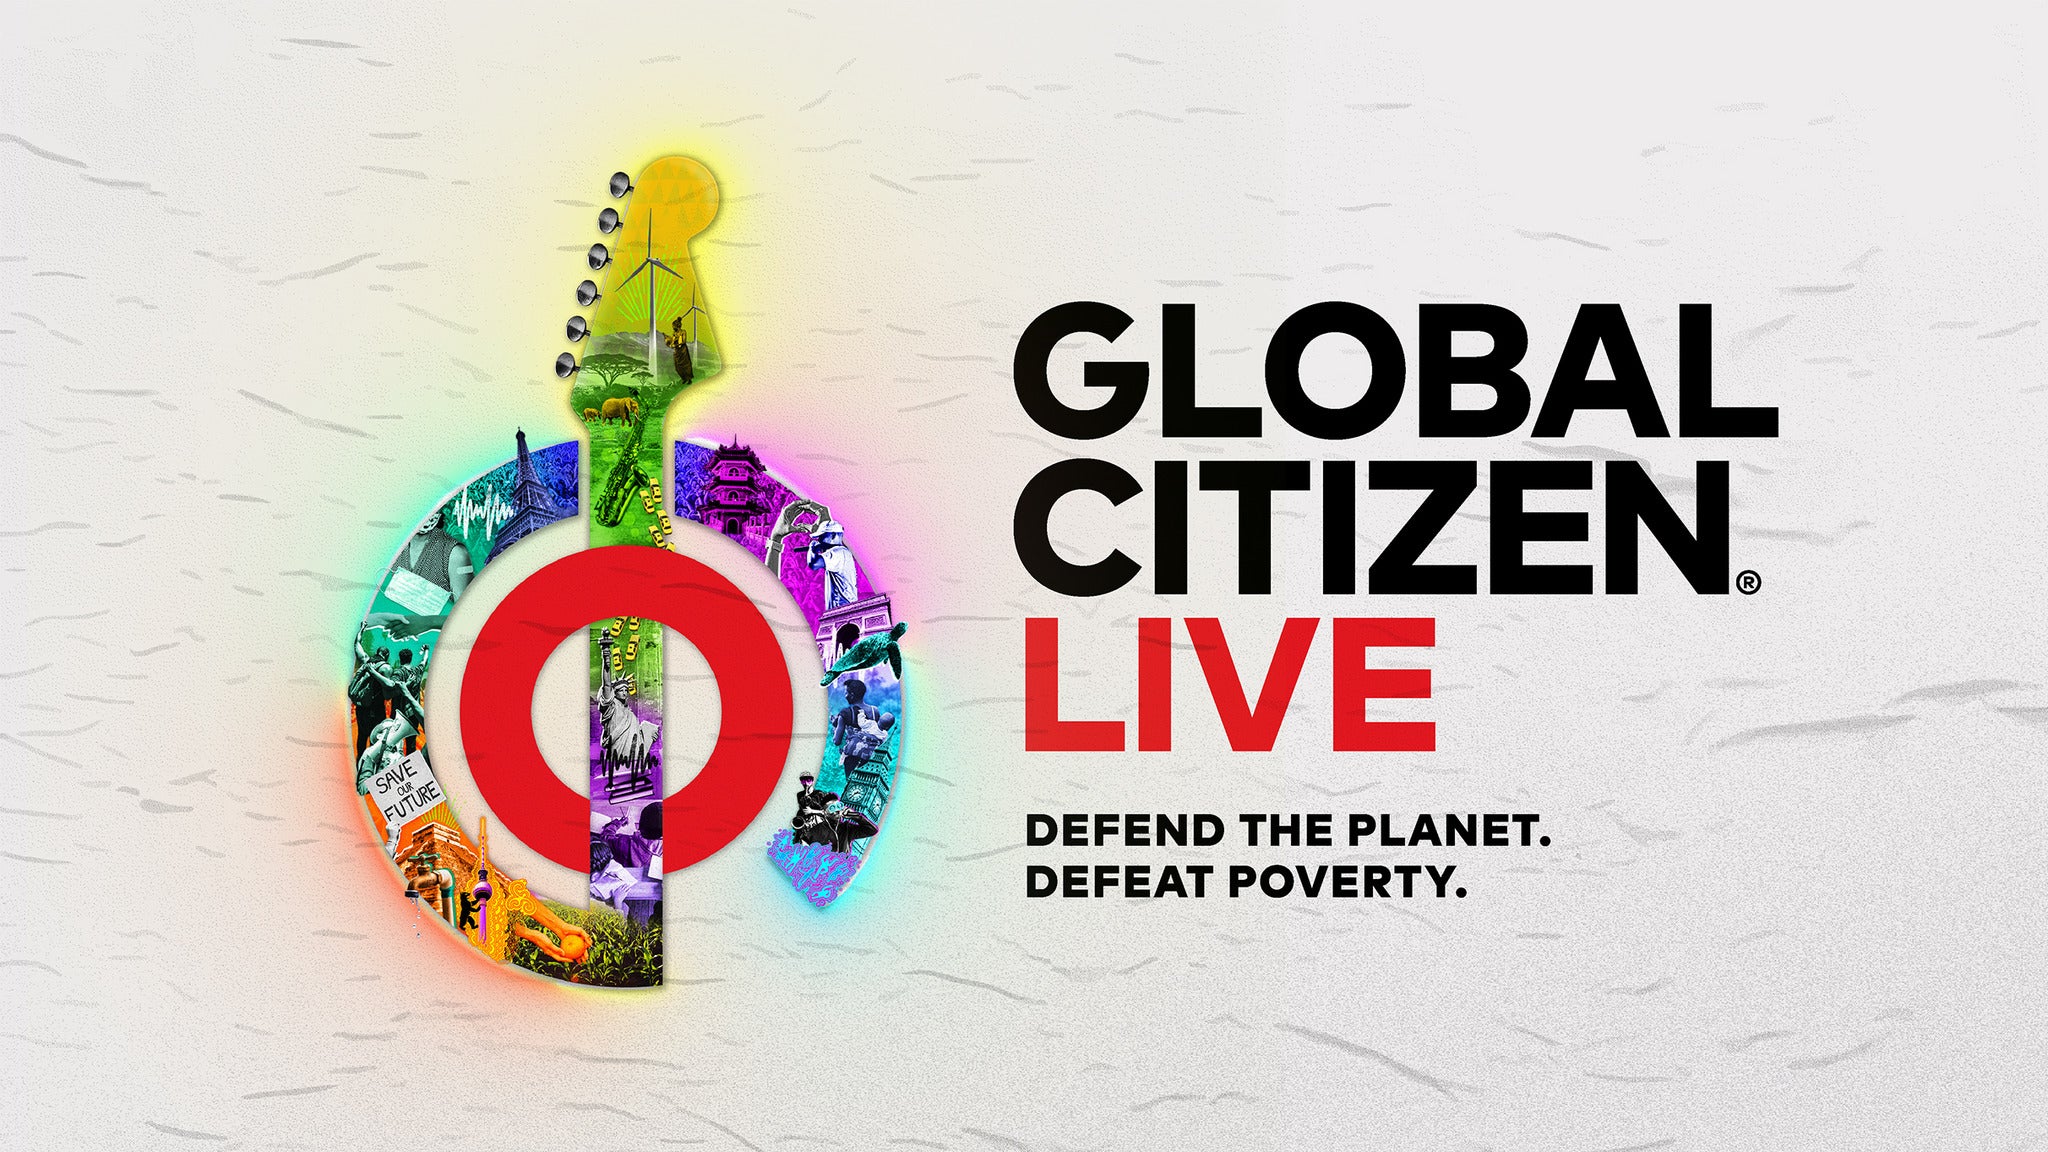 Global Citizen Live presale information on freepresalepasswords.com